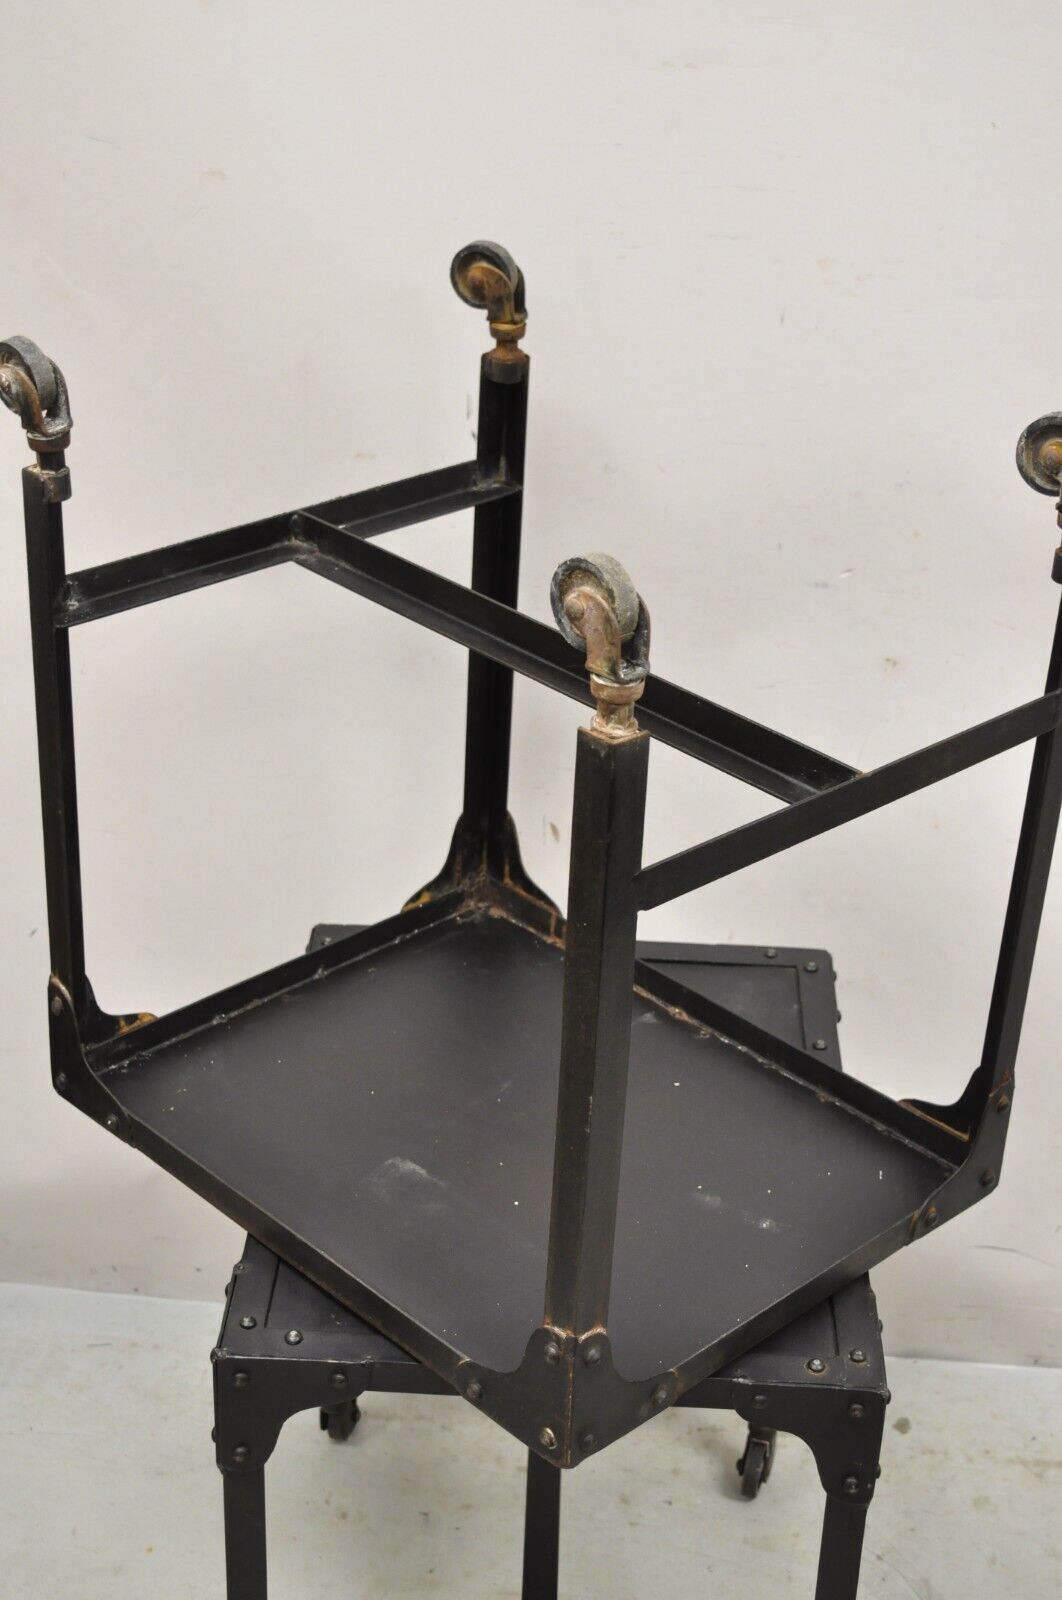 Decorator Industrial Vintage Style Steel Metal Side Tables on Wheels - a Pair